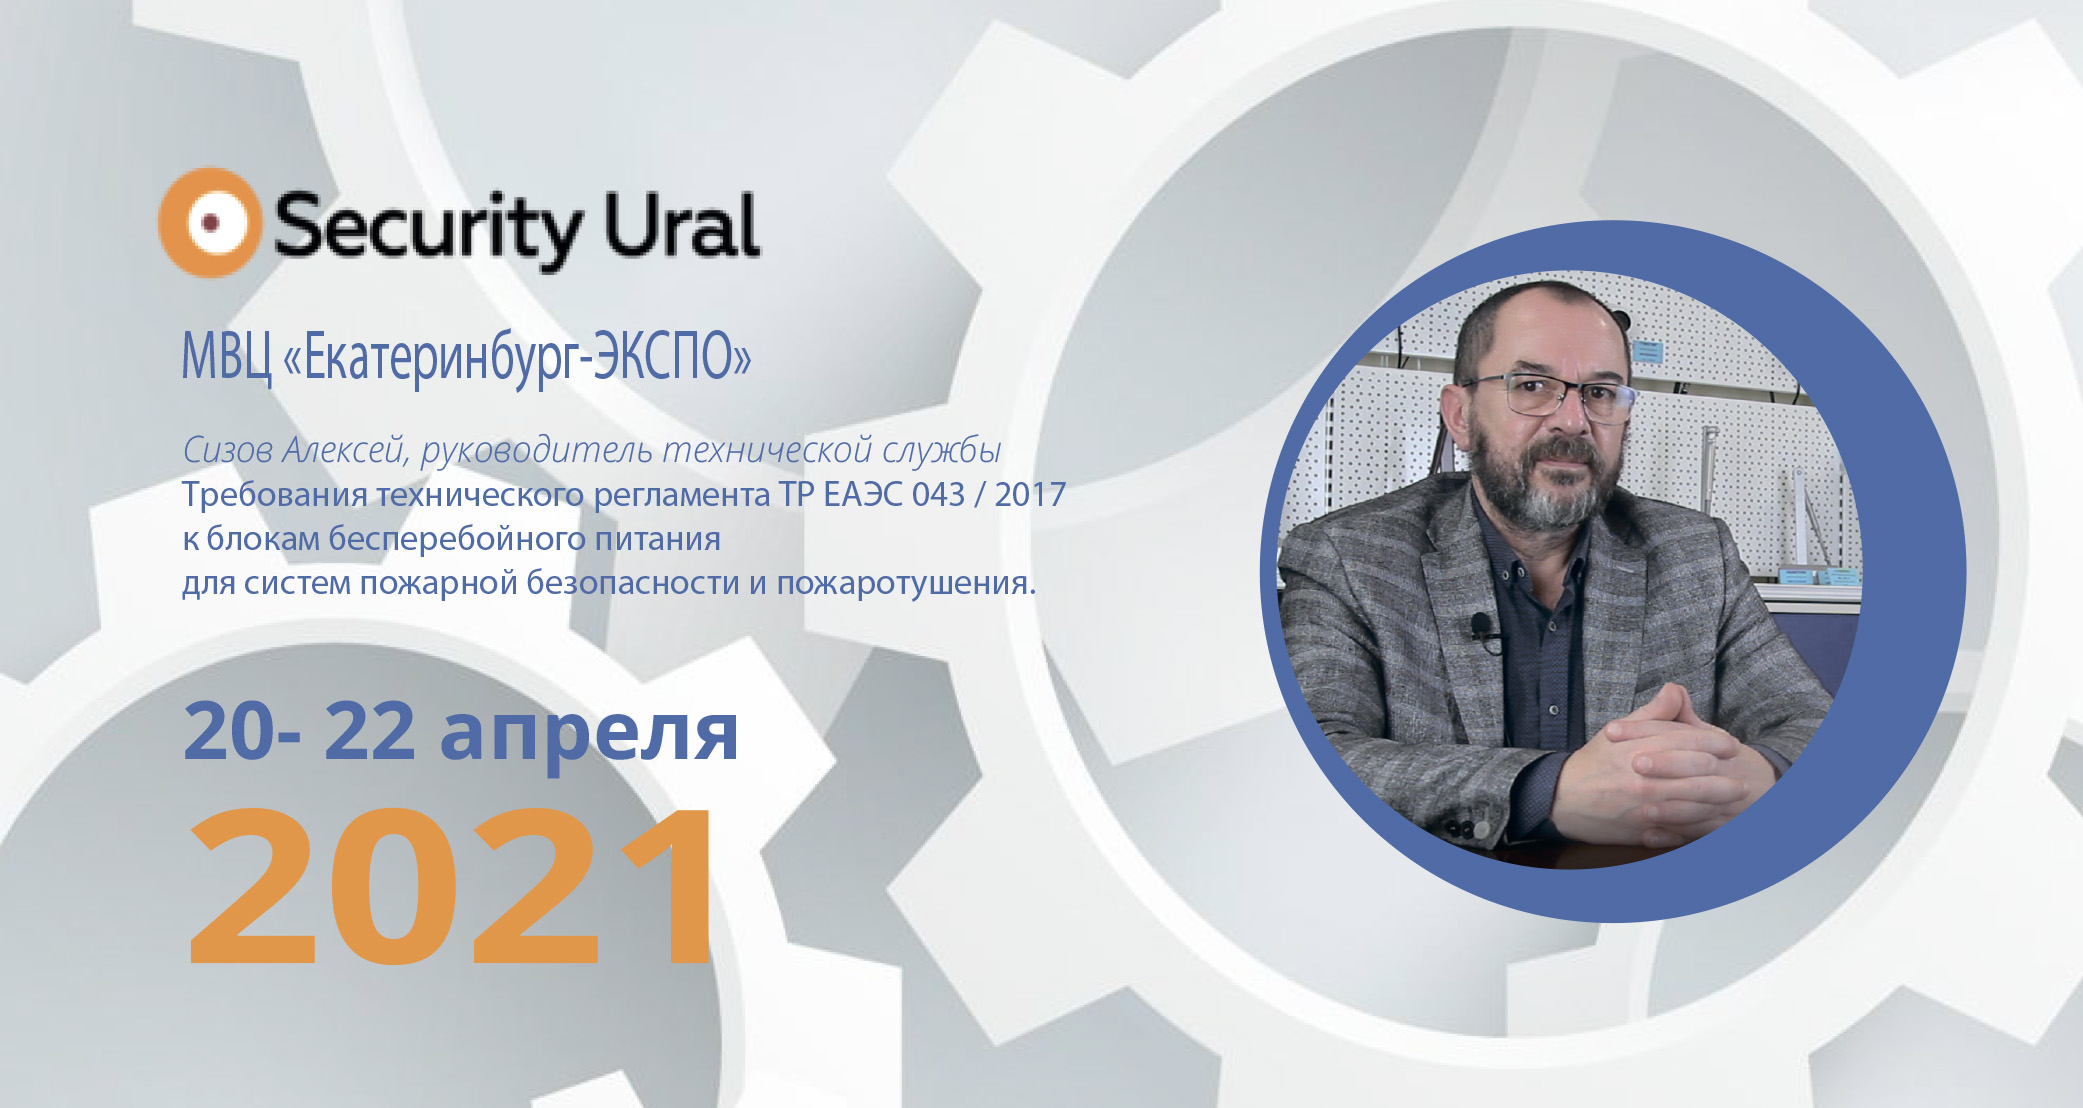 Приглашаем на презентацию блоков питания ТР Accordtec с сертификатом ЕАЭС на выставке Security Ural!<